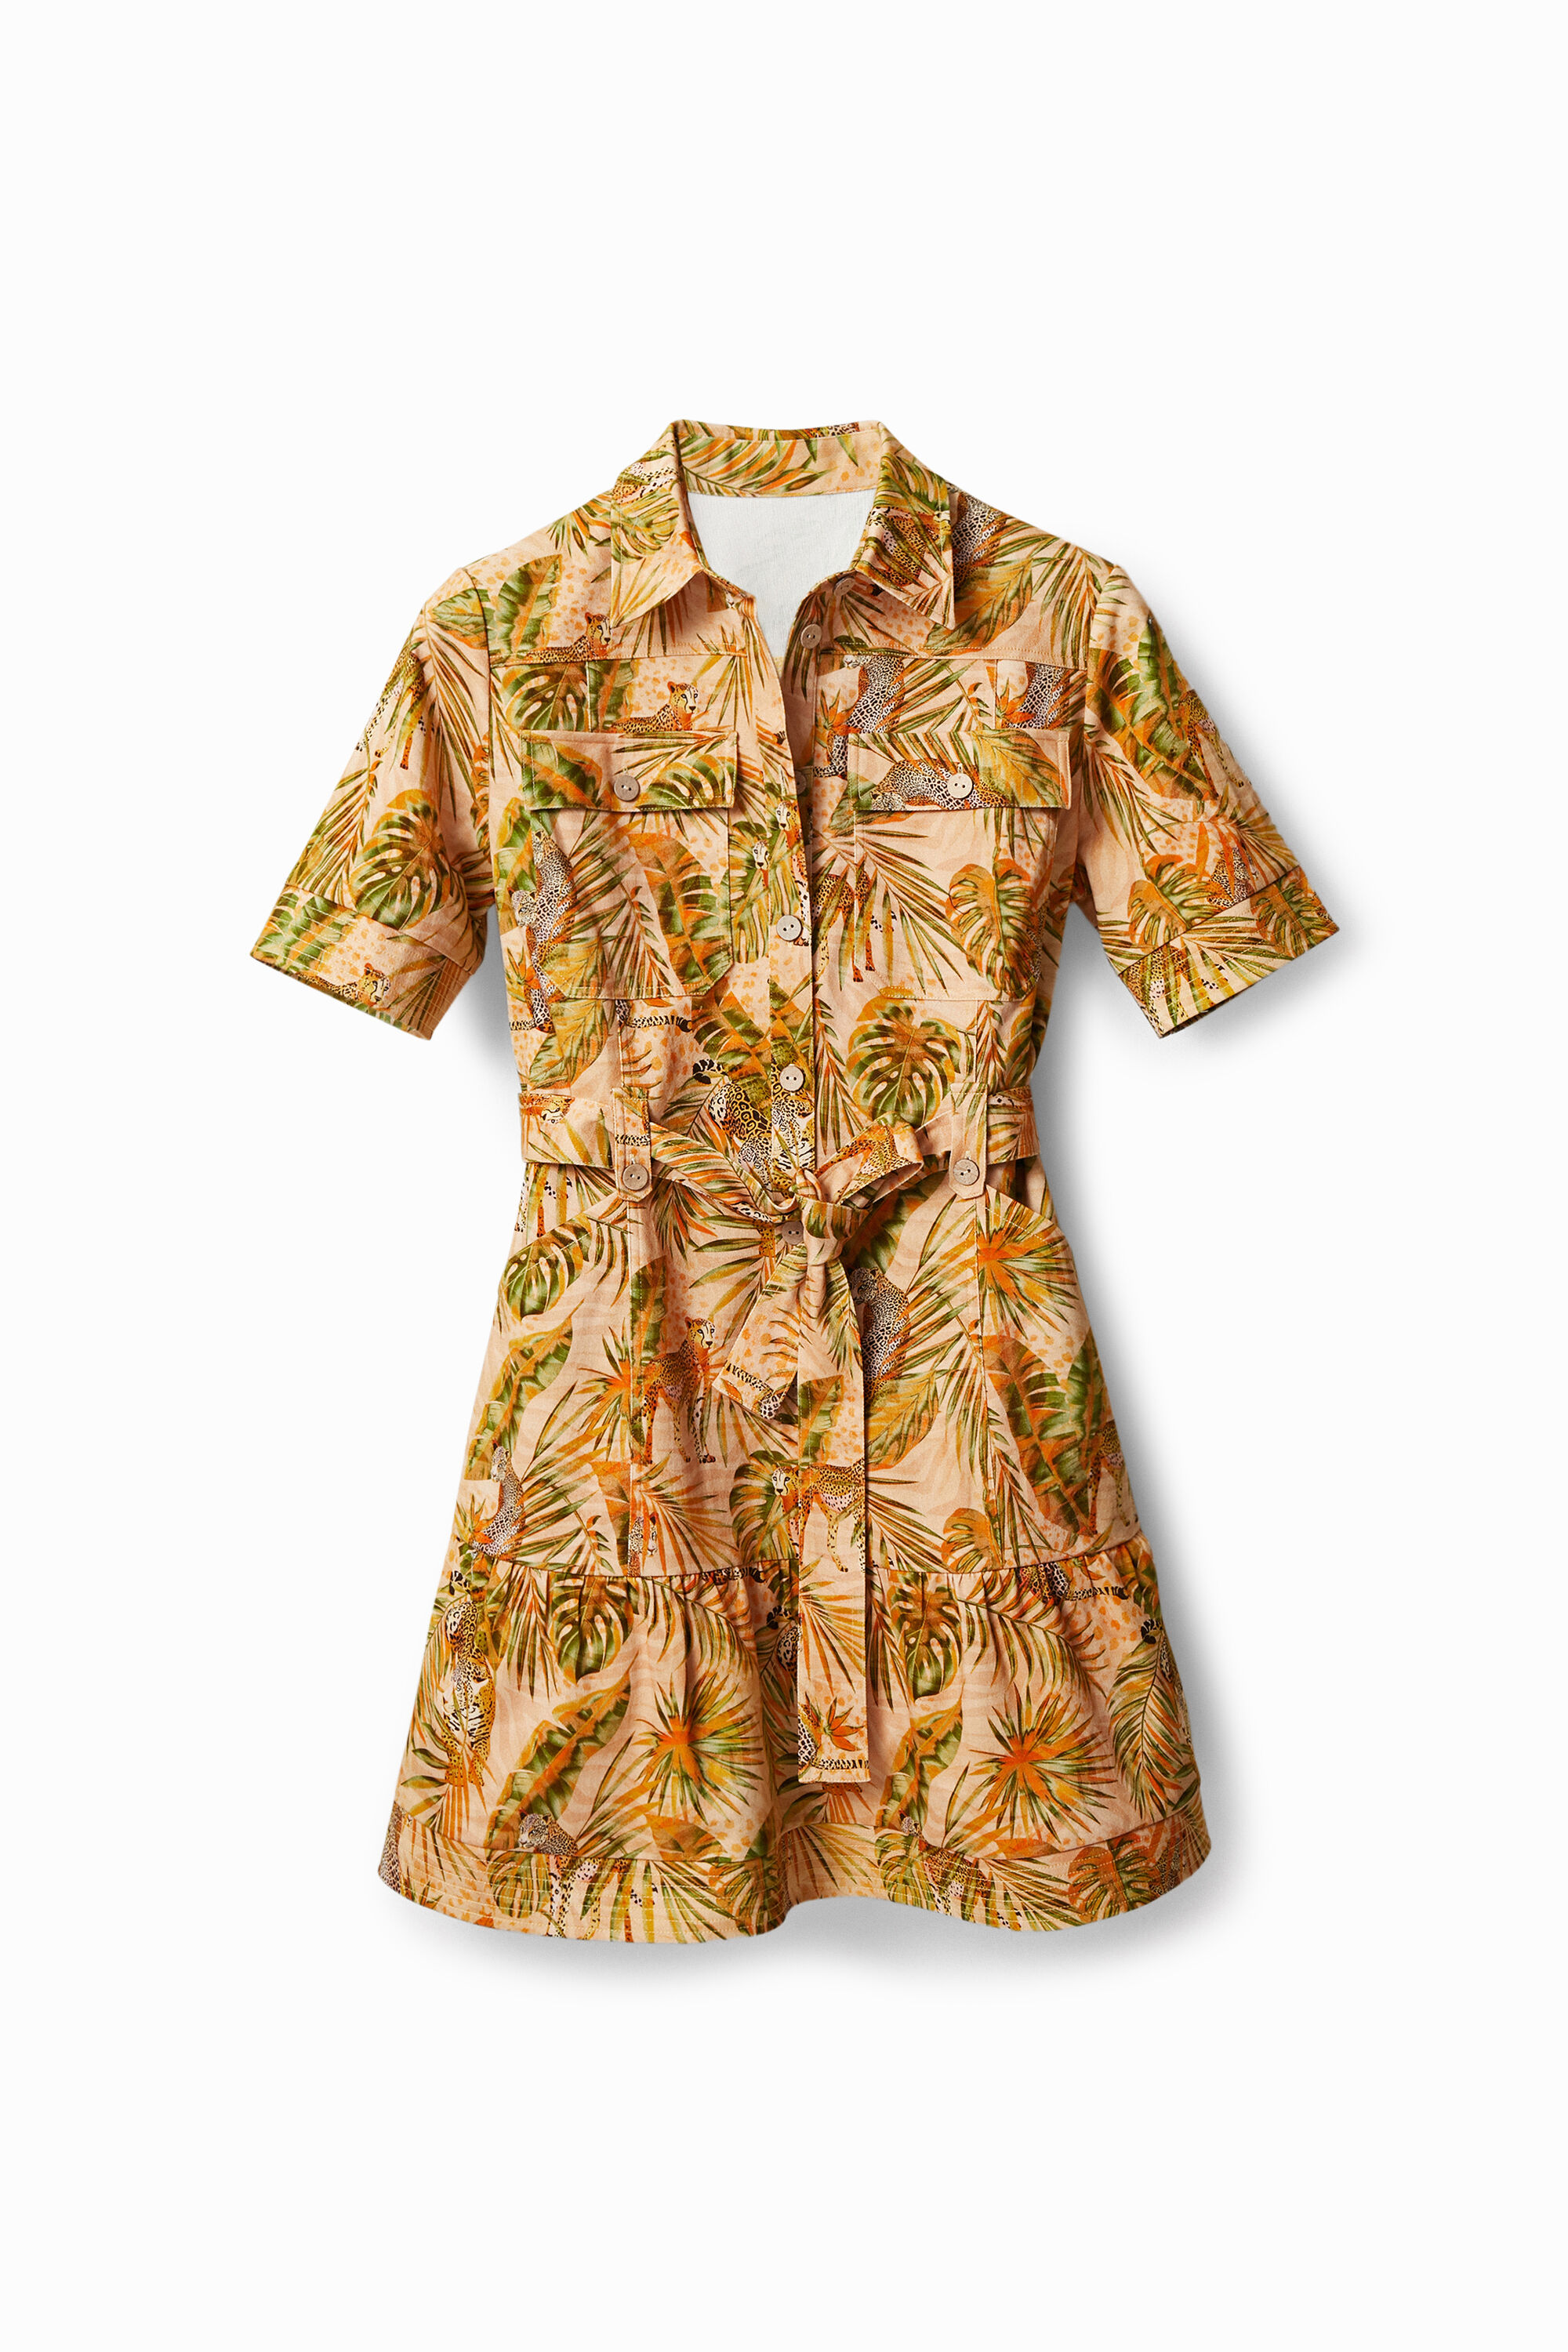 Tropical shirt dress | Desigual.com